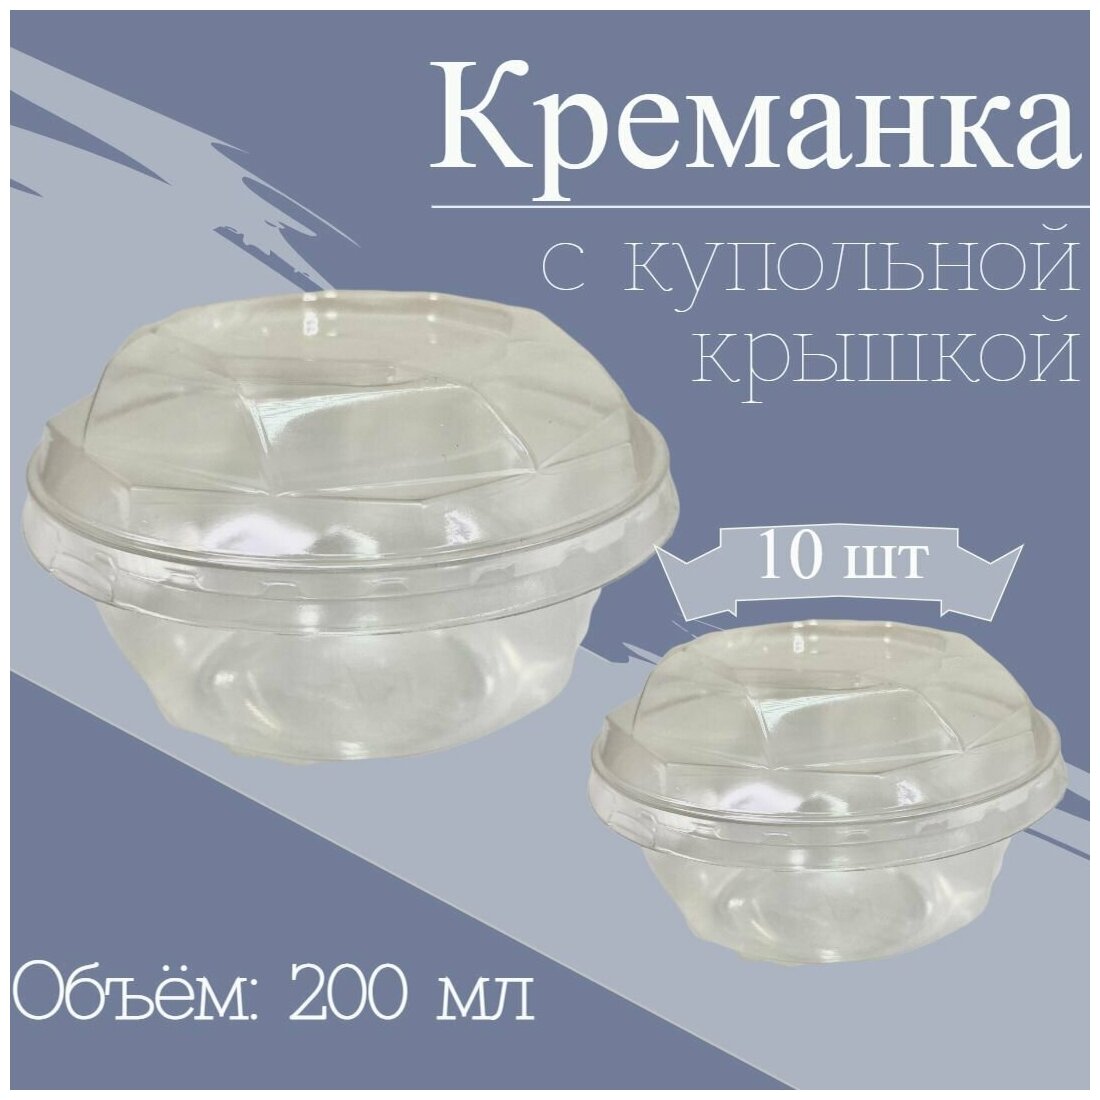 Креманка одноразовая Бриллиант с купольной крышкой форма для десертов салатов 200 мл ПЭТ прозрачная с крышкой 10 шт.